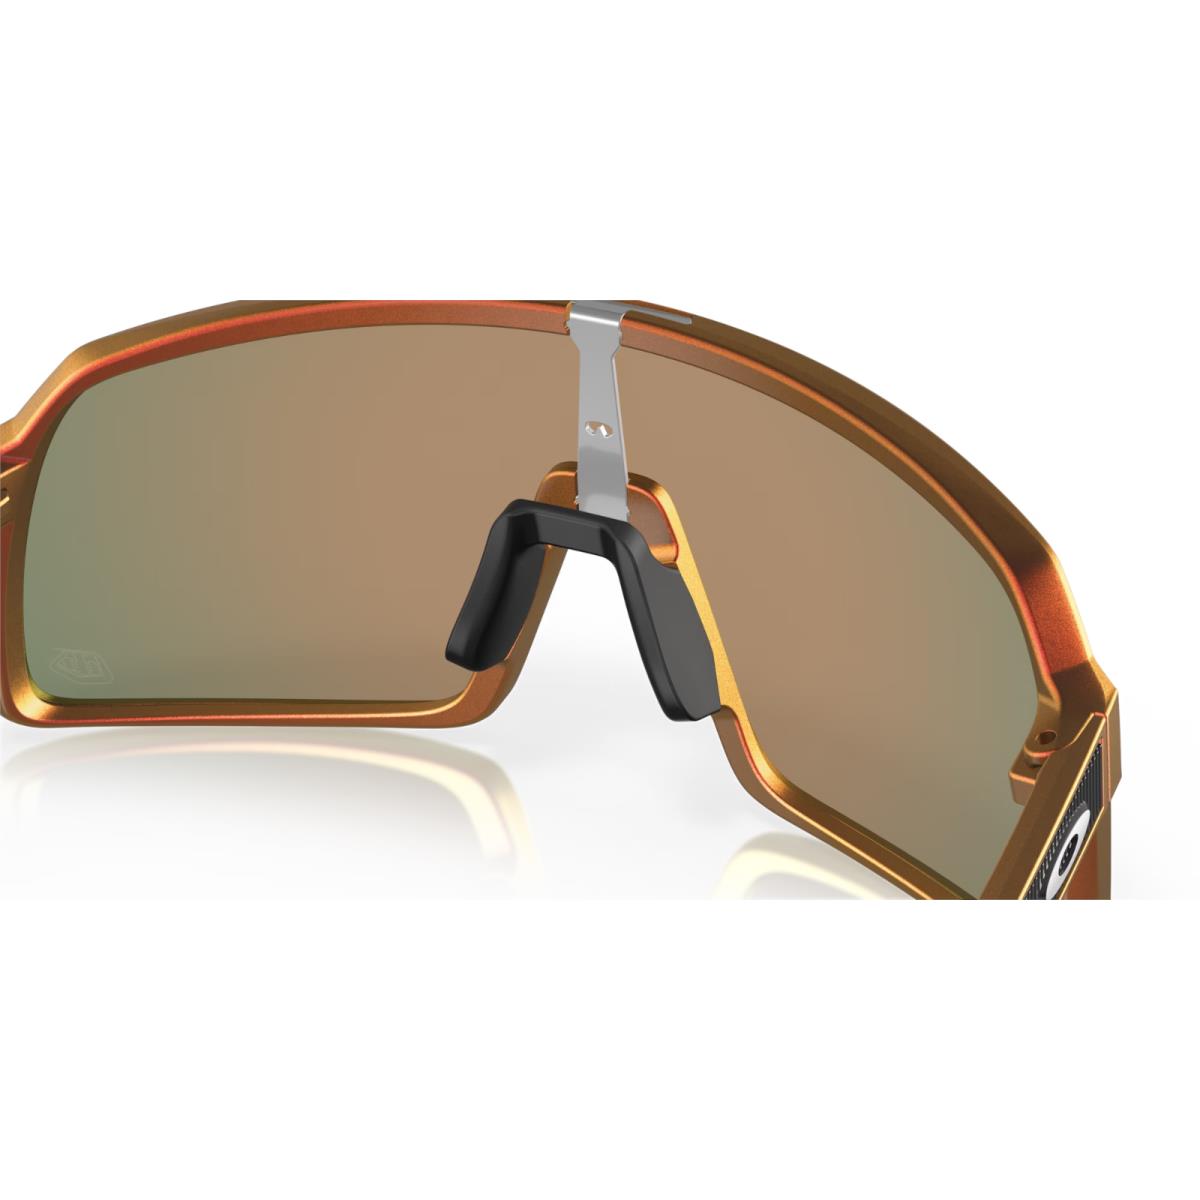 Oakley sunglasses  - Frame: Red Gold Shift, Lens: 5